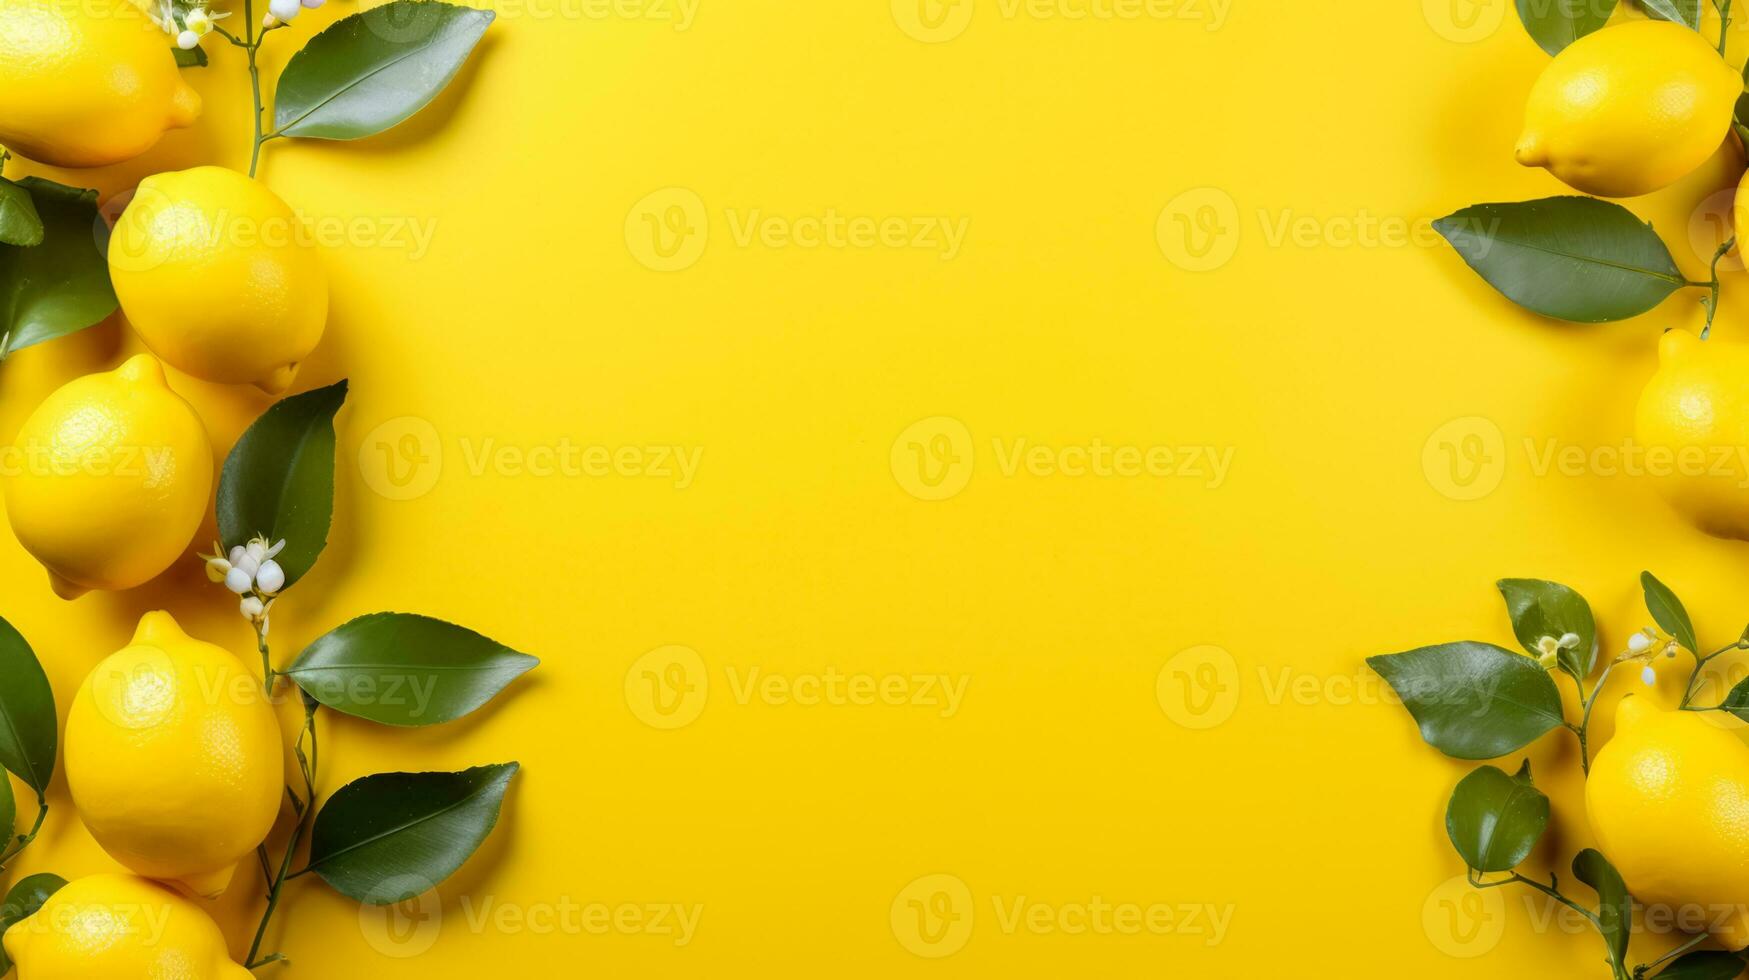 Surreal minimalism background with lemons photo